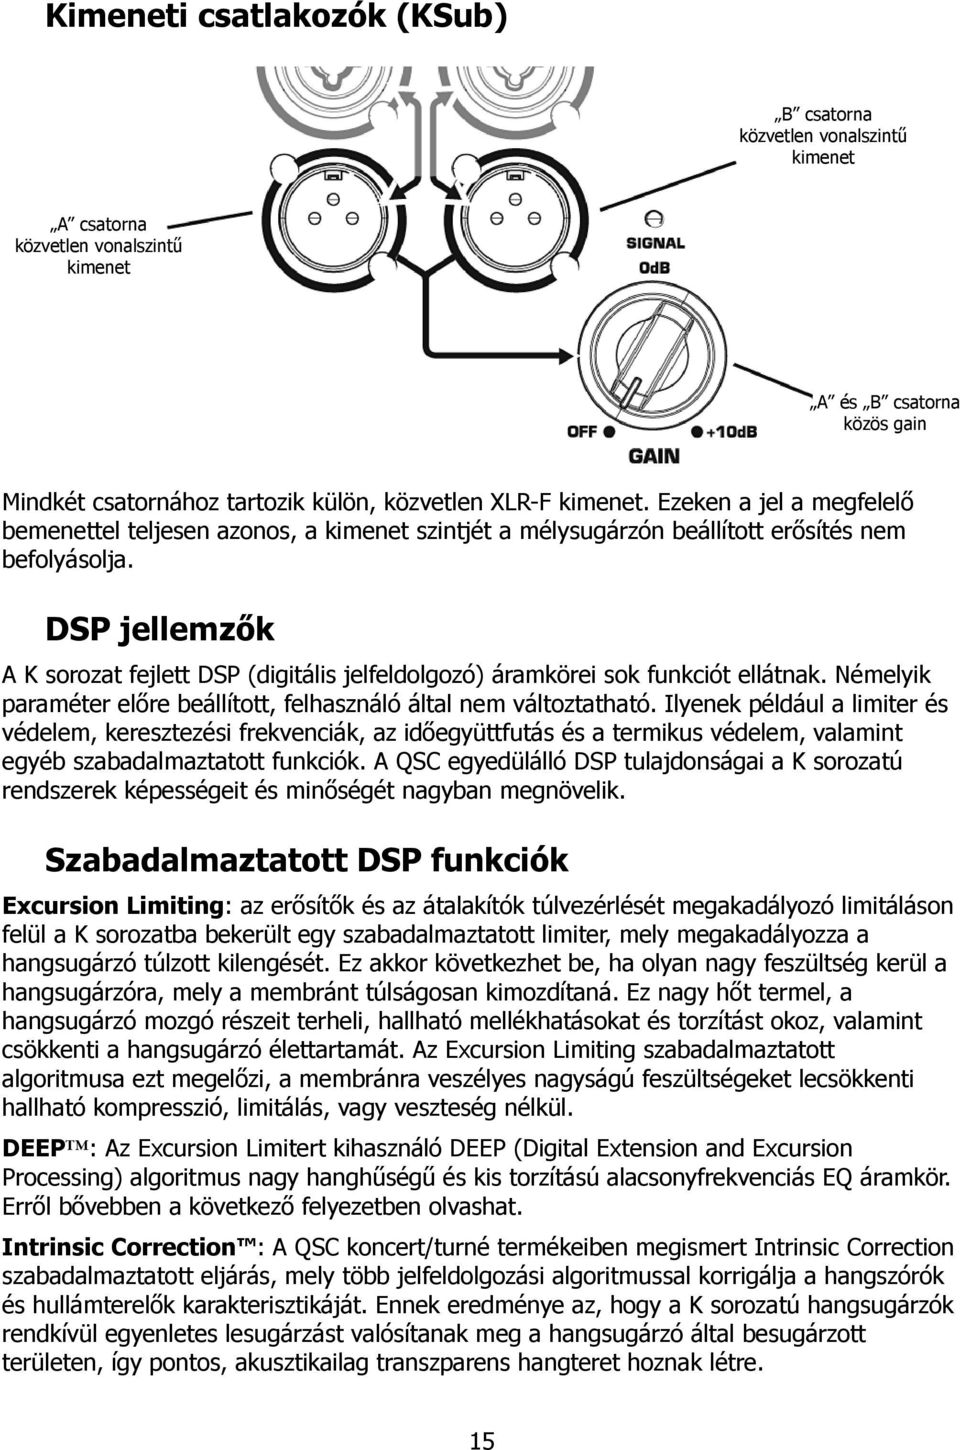 DSP jellemzők A K sorozat fejlett DSP (digitális jelfeldolgozó) áramkörei sok funkciót ellátnak. Némelyik paraméter előre beállított, felhasználó által nem változtatható.